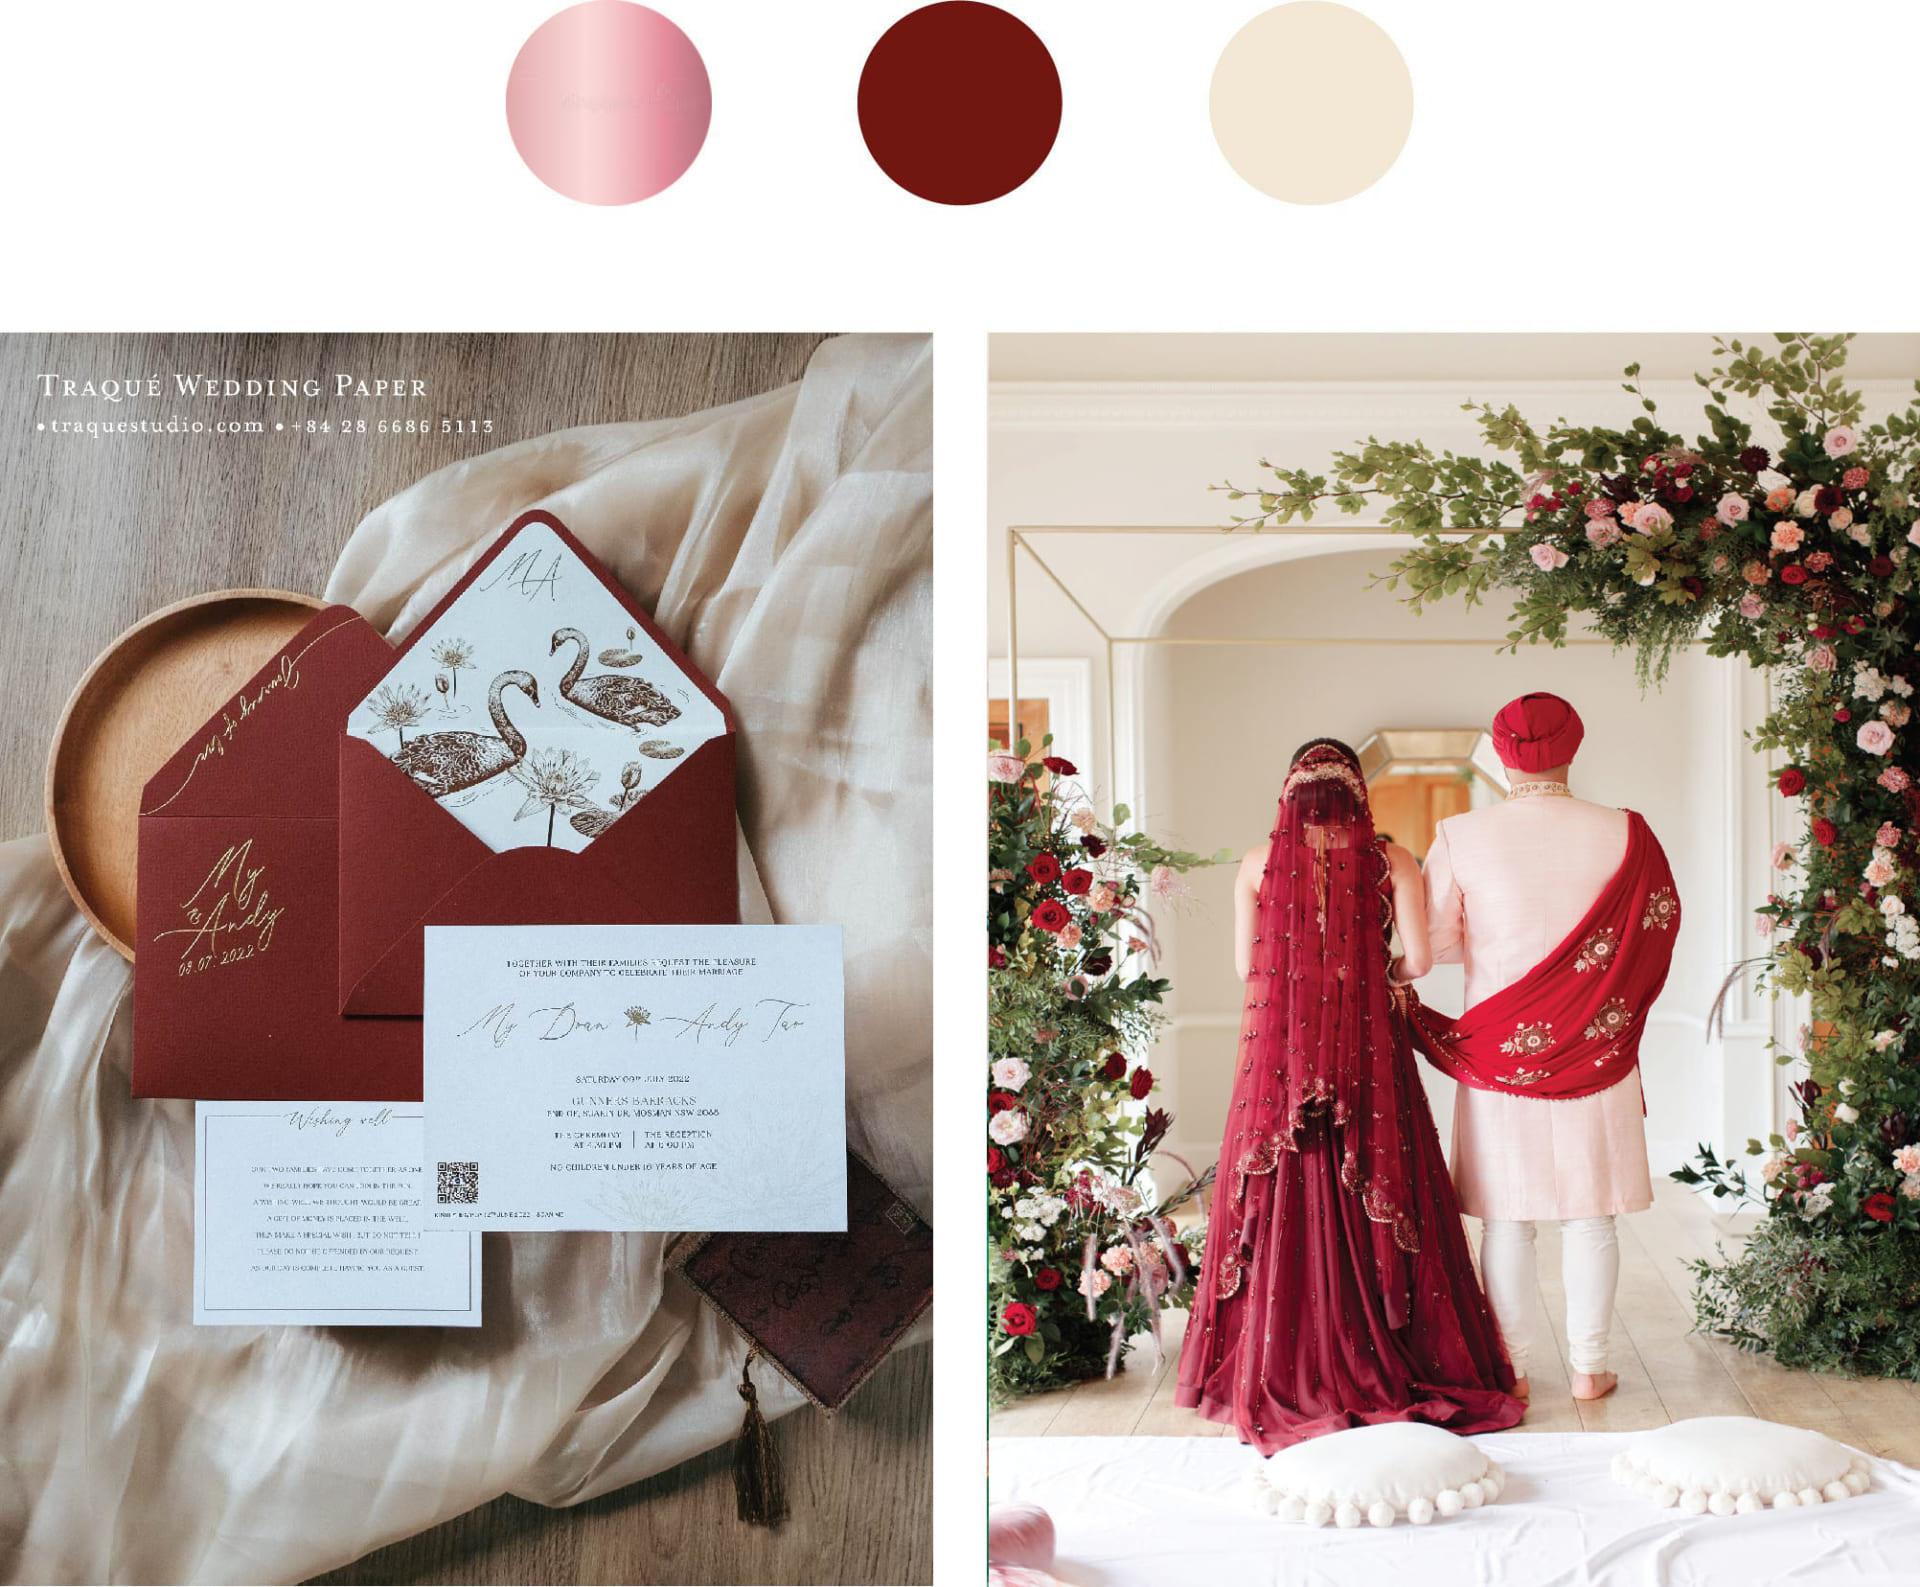 Ảnh trái: Traqué Wedding Paper (bộ sưu tập Asian Remix) - Ảnh phải: Pinterest